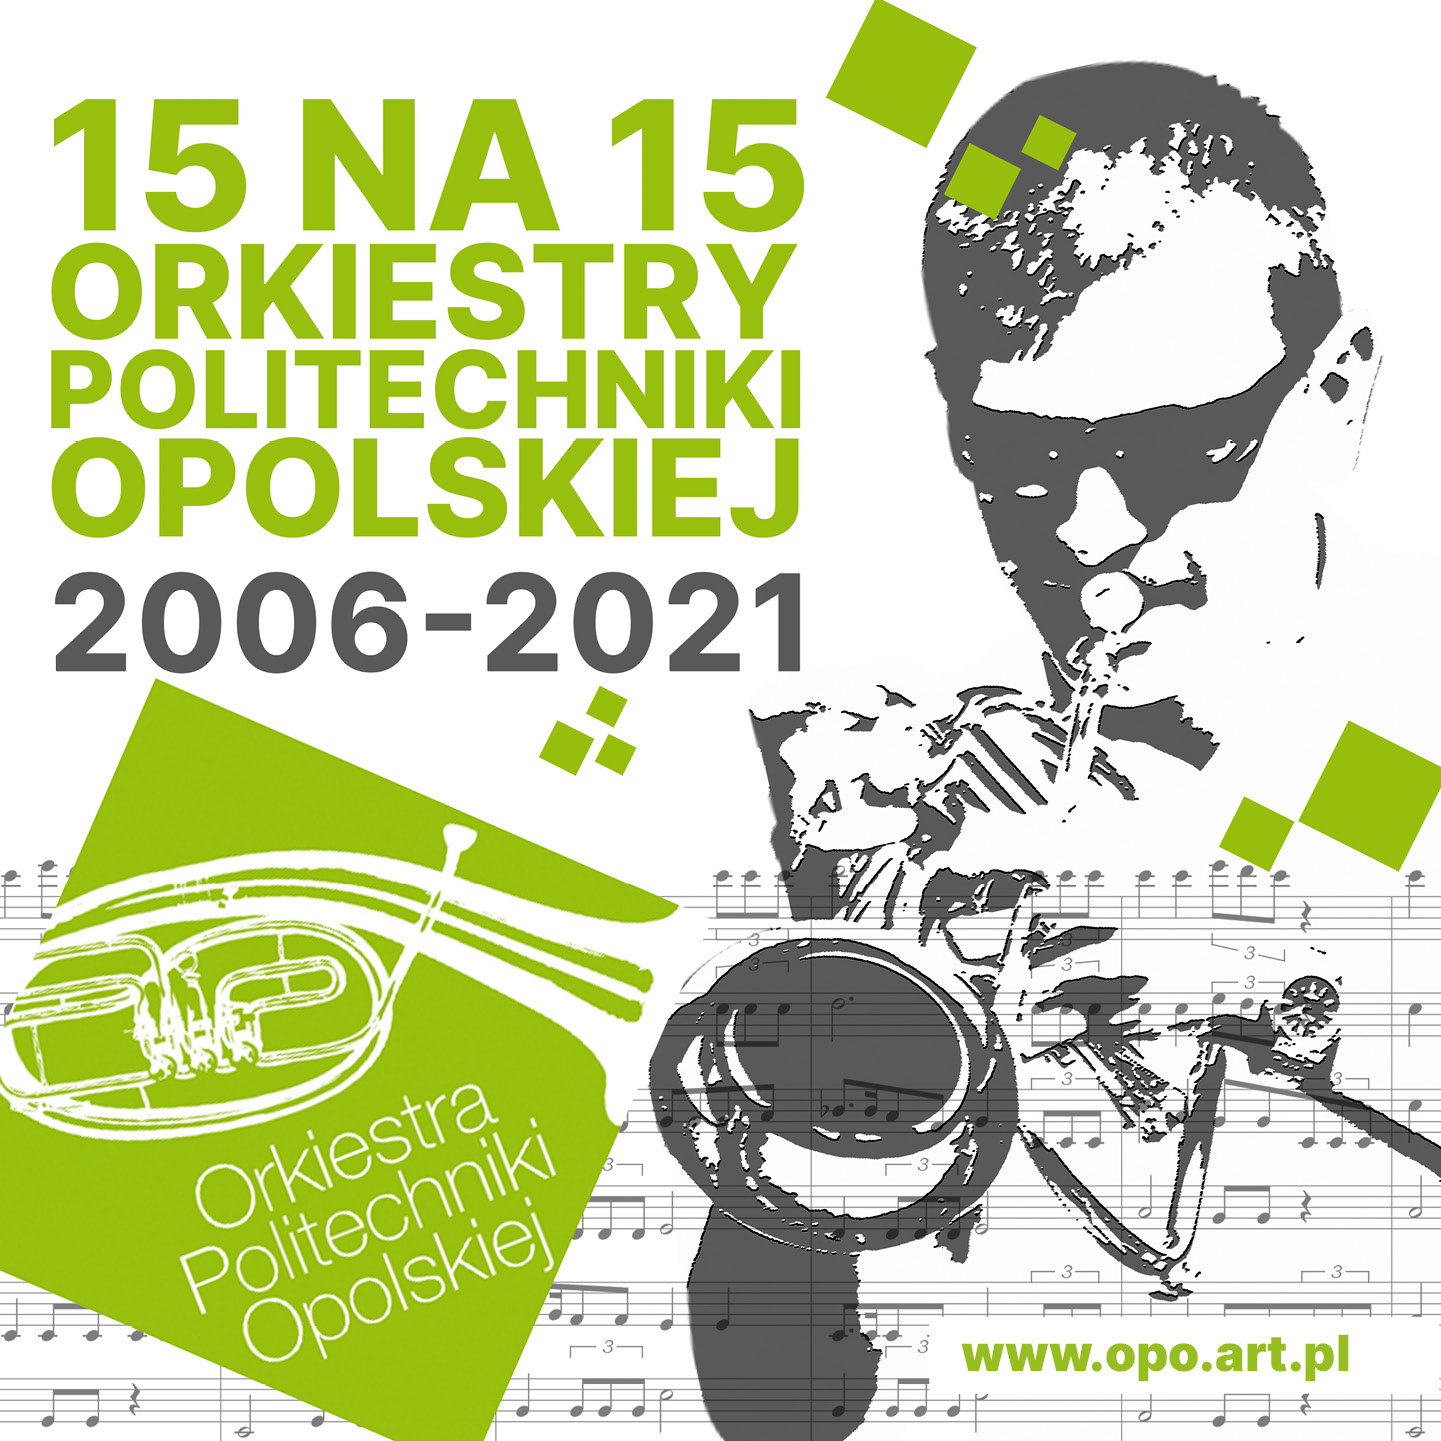 Jubileuszowe fonogramy Orkiestry Politechniki Opolskiej i el12 Opole Politechnic Band – Generacja 2.0